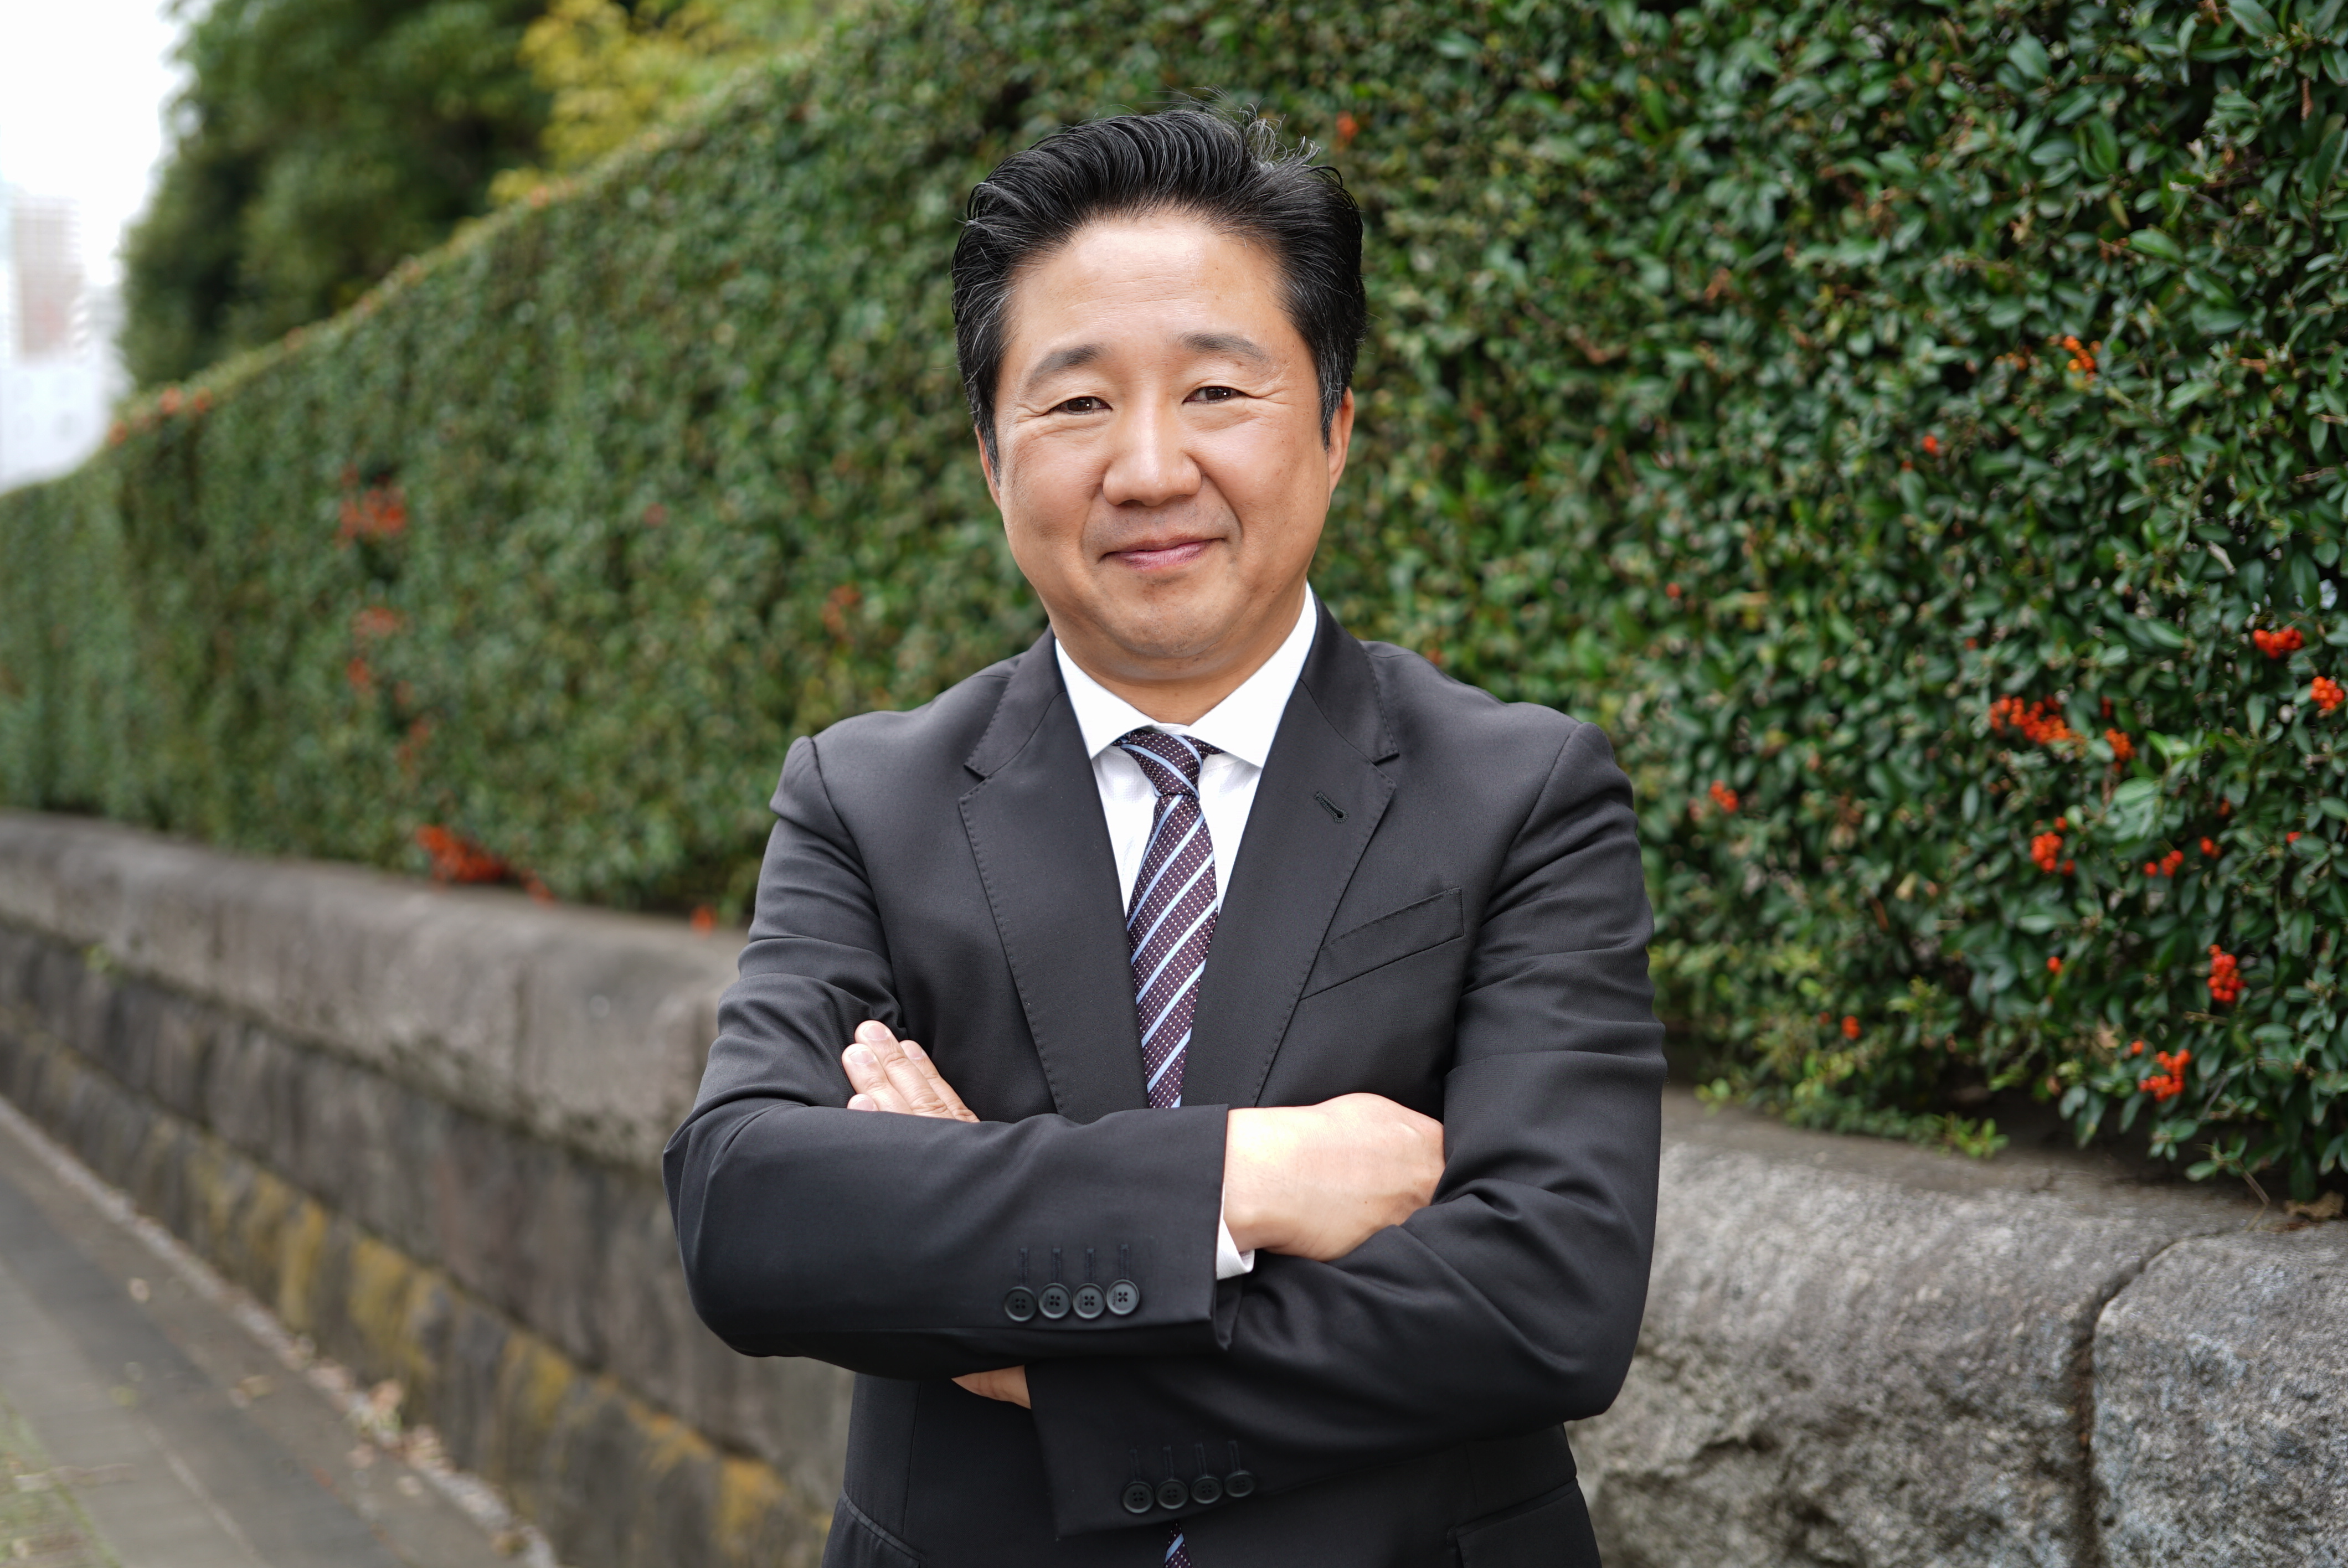 代表取締役　浅田 剛治氏
30歳でノバレーゼを起業し、東証一部上場まで成長を牽引。2017年に同社を設立。